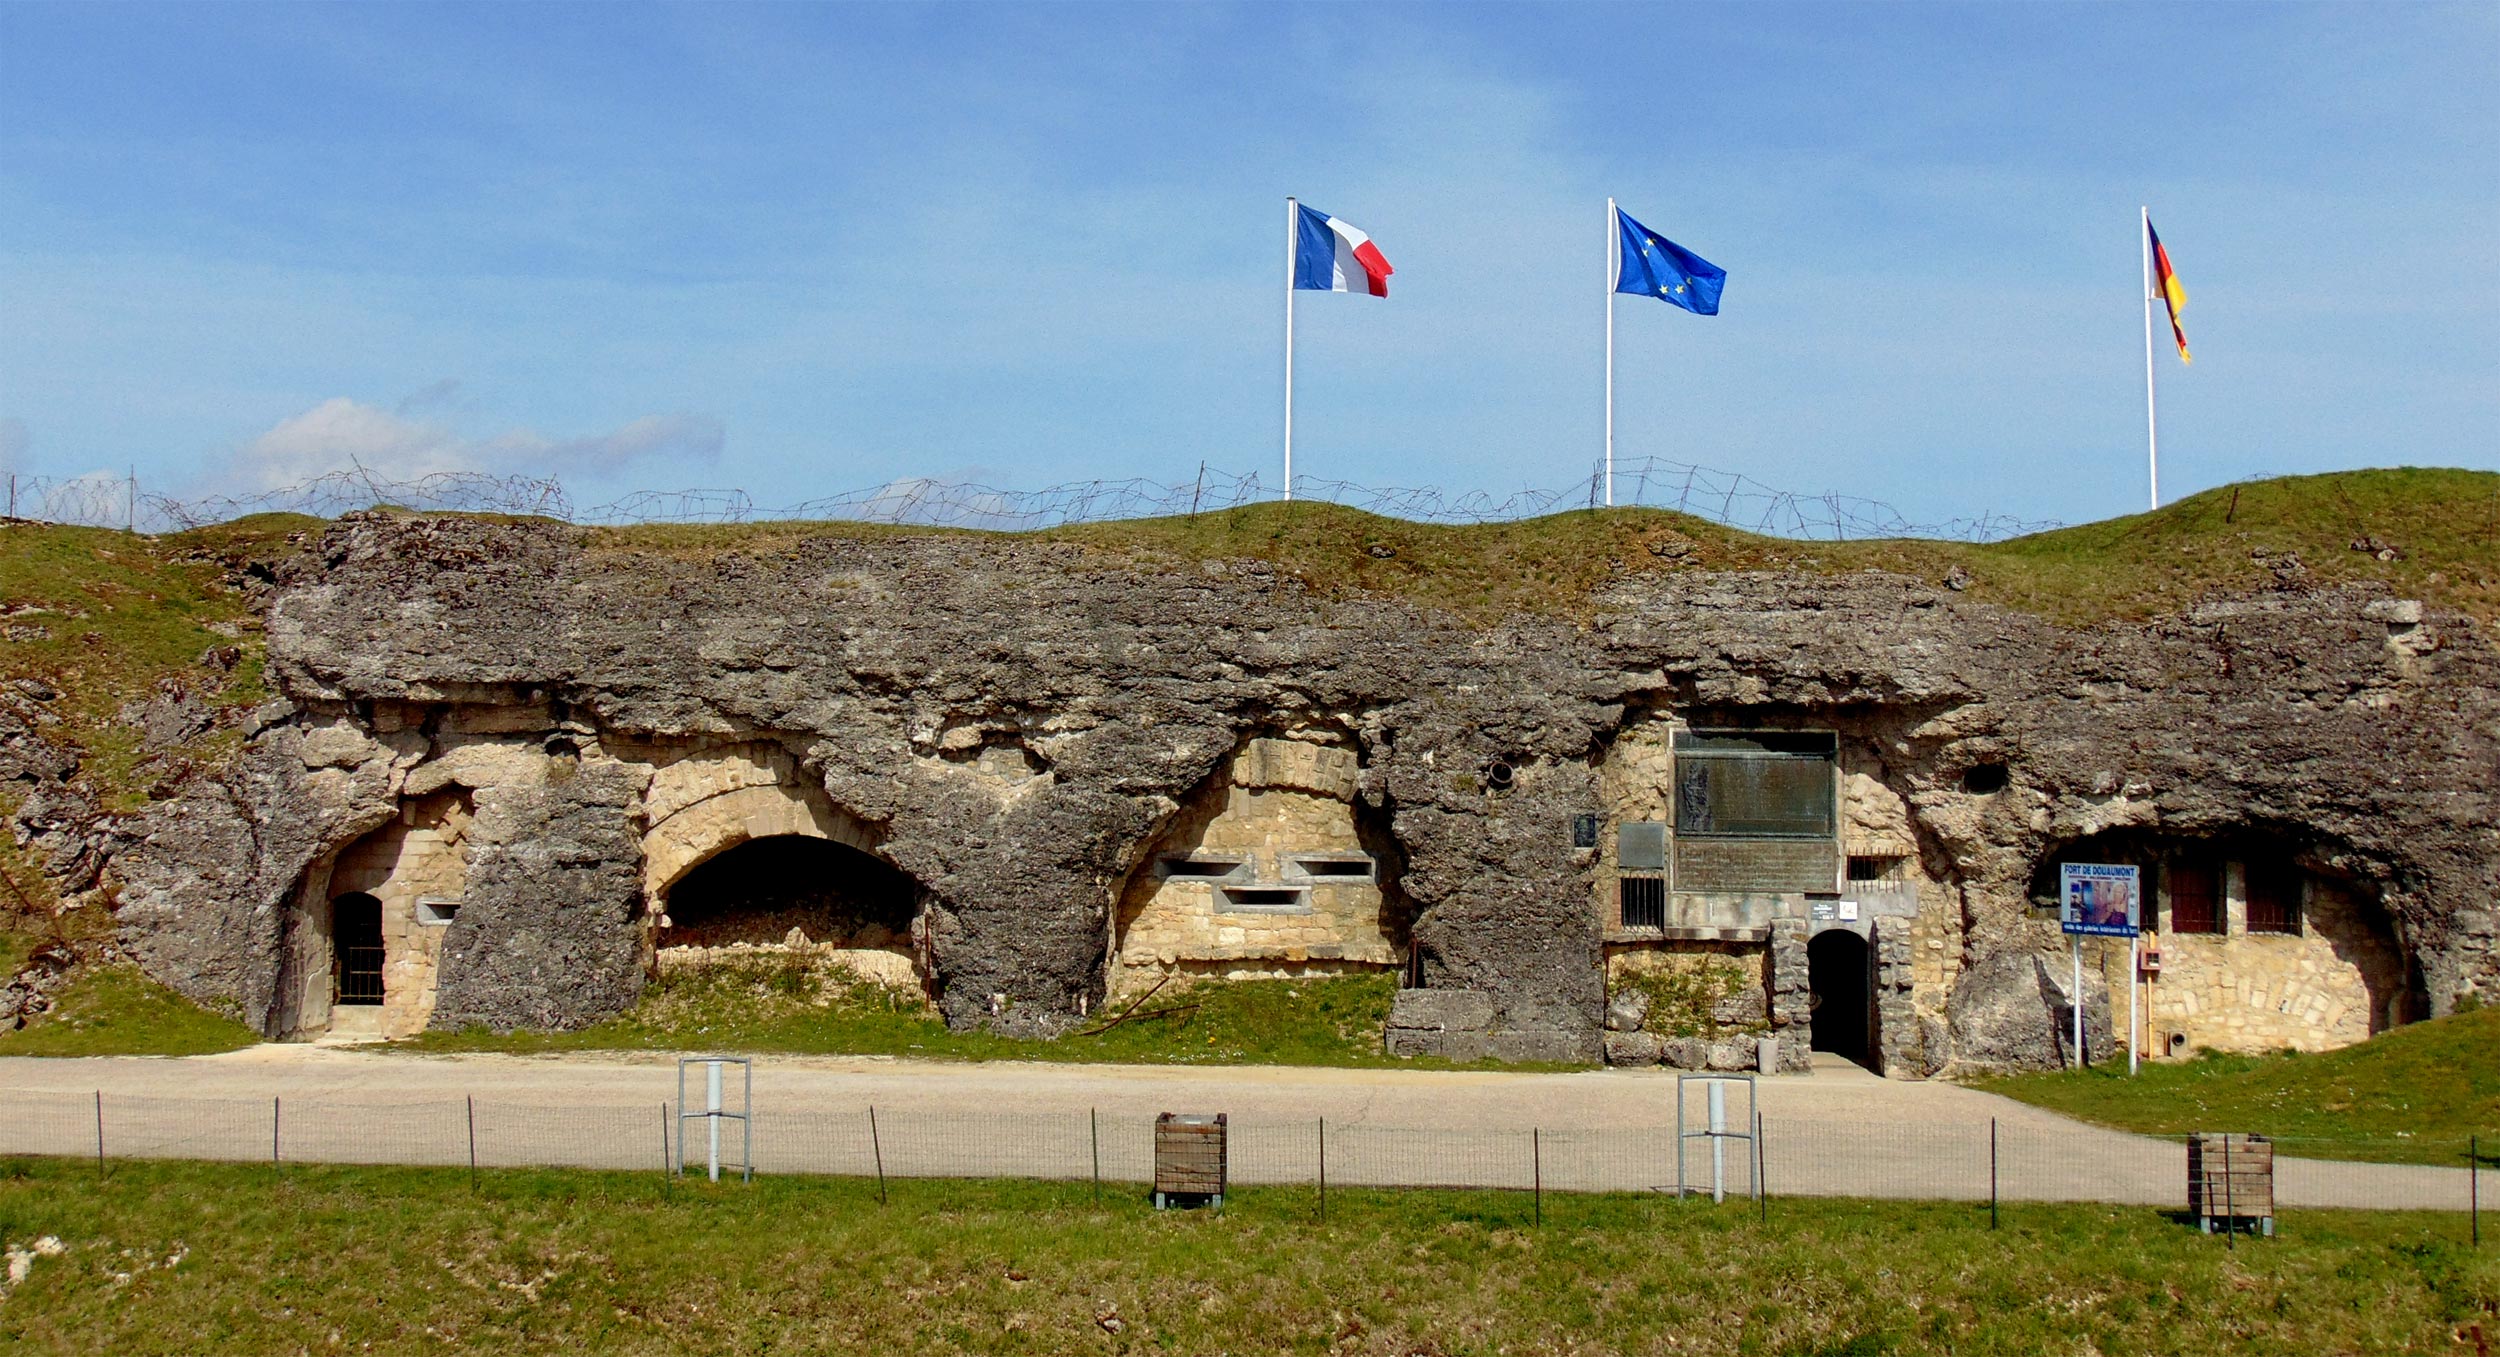 Fort Douaumont Verdun Battlefield tours from Paris